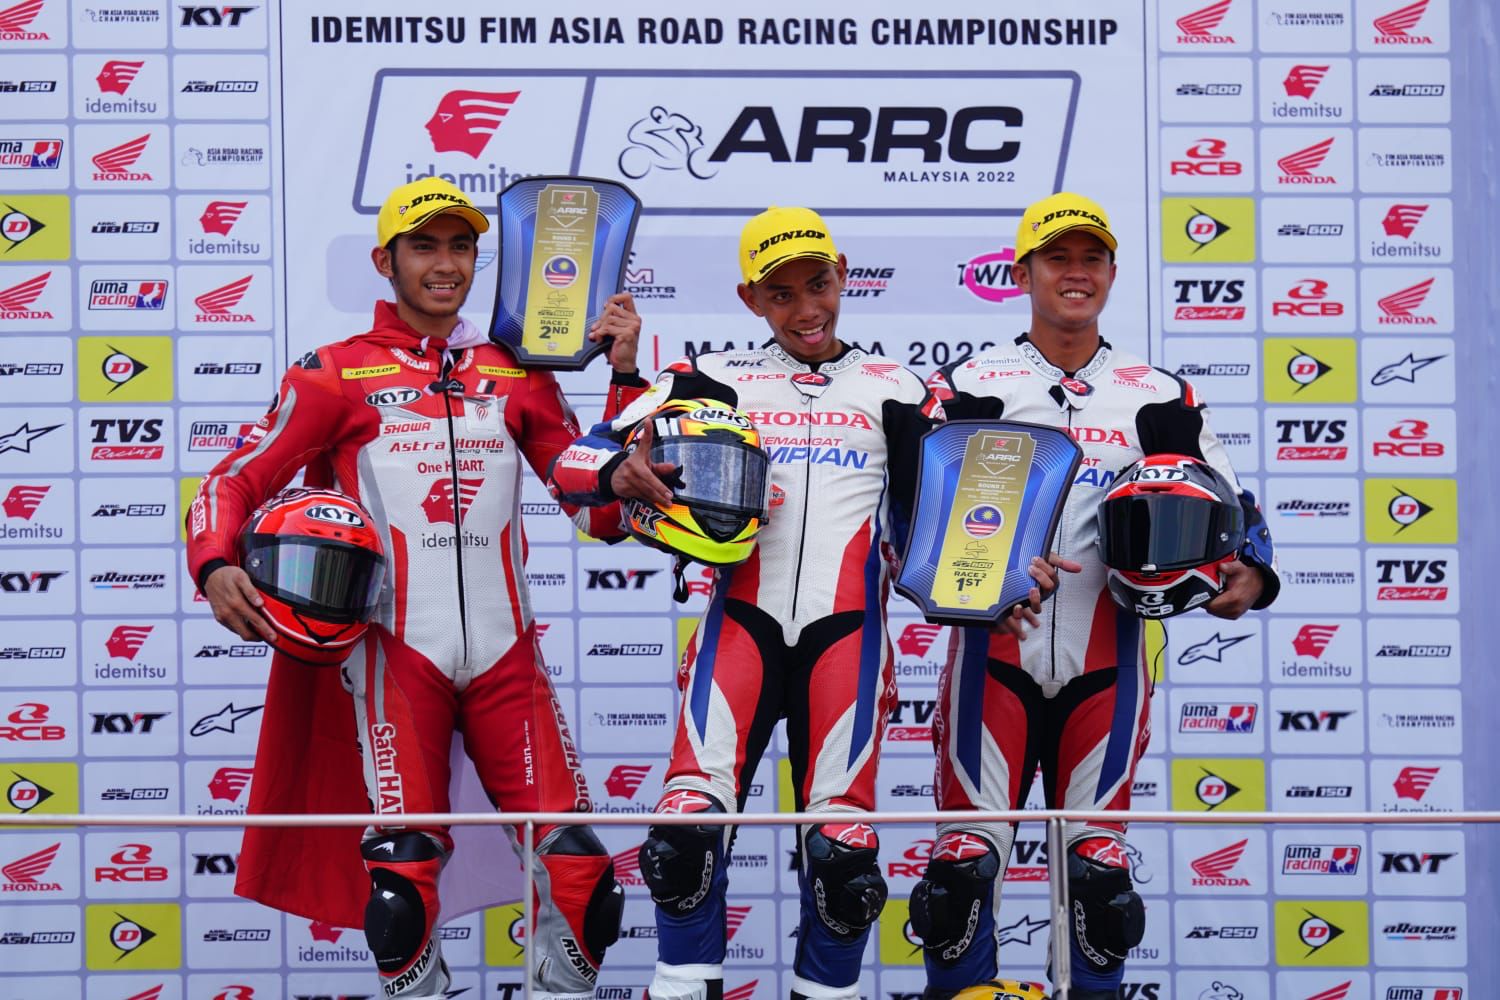 Pebalap binaan PT Astra Honda Motor (AHM), melanjutkan trend raihan podium di ajang balap Asia Road Racing Championship (ARRC) 2022 putaran kedua.